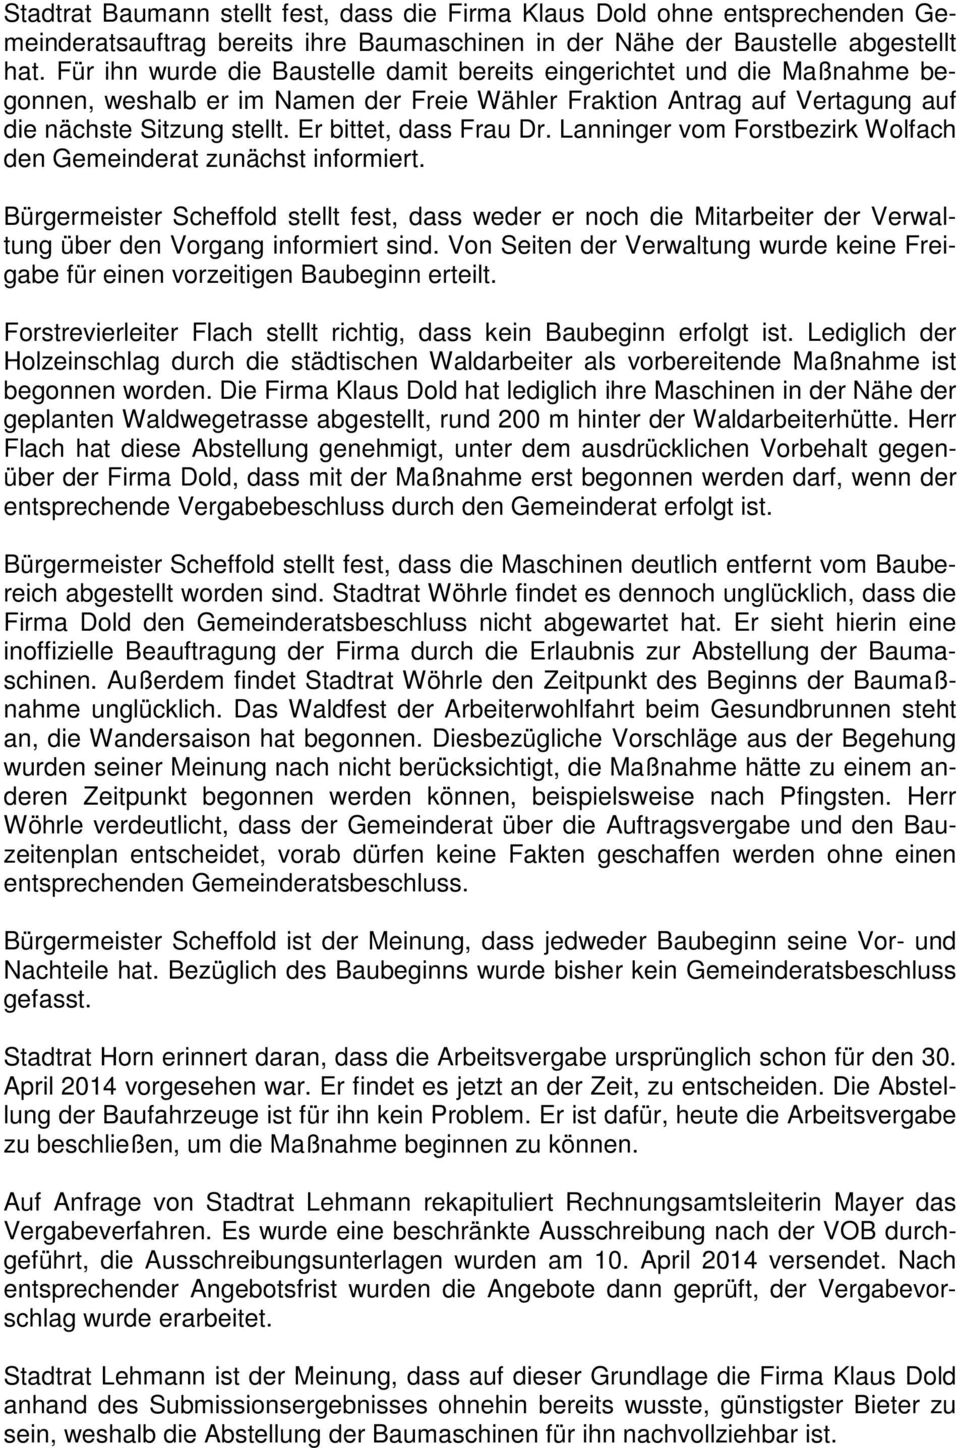 Er bittet, dass Frau Dr. Lanninger vom Forstbezirk Wolfach den Gemeinderat zunächst informiert.